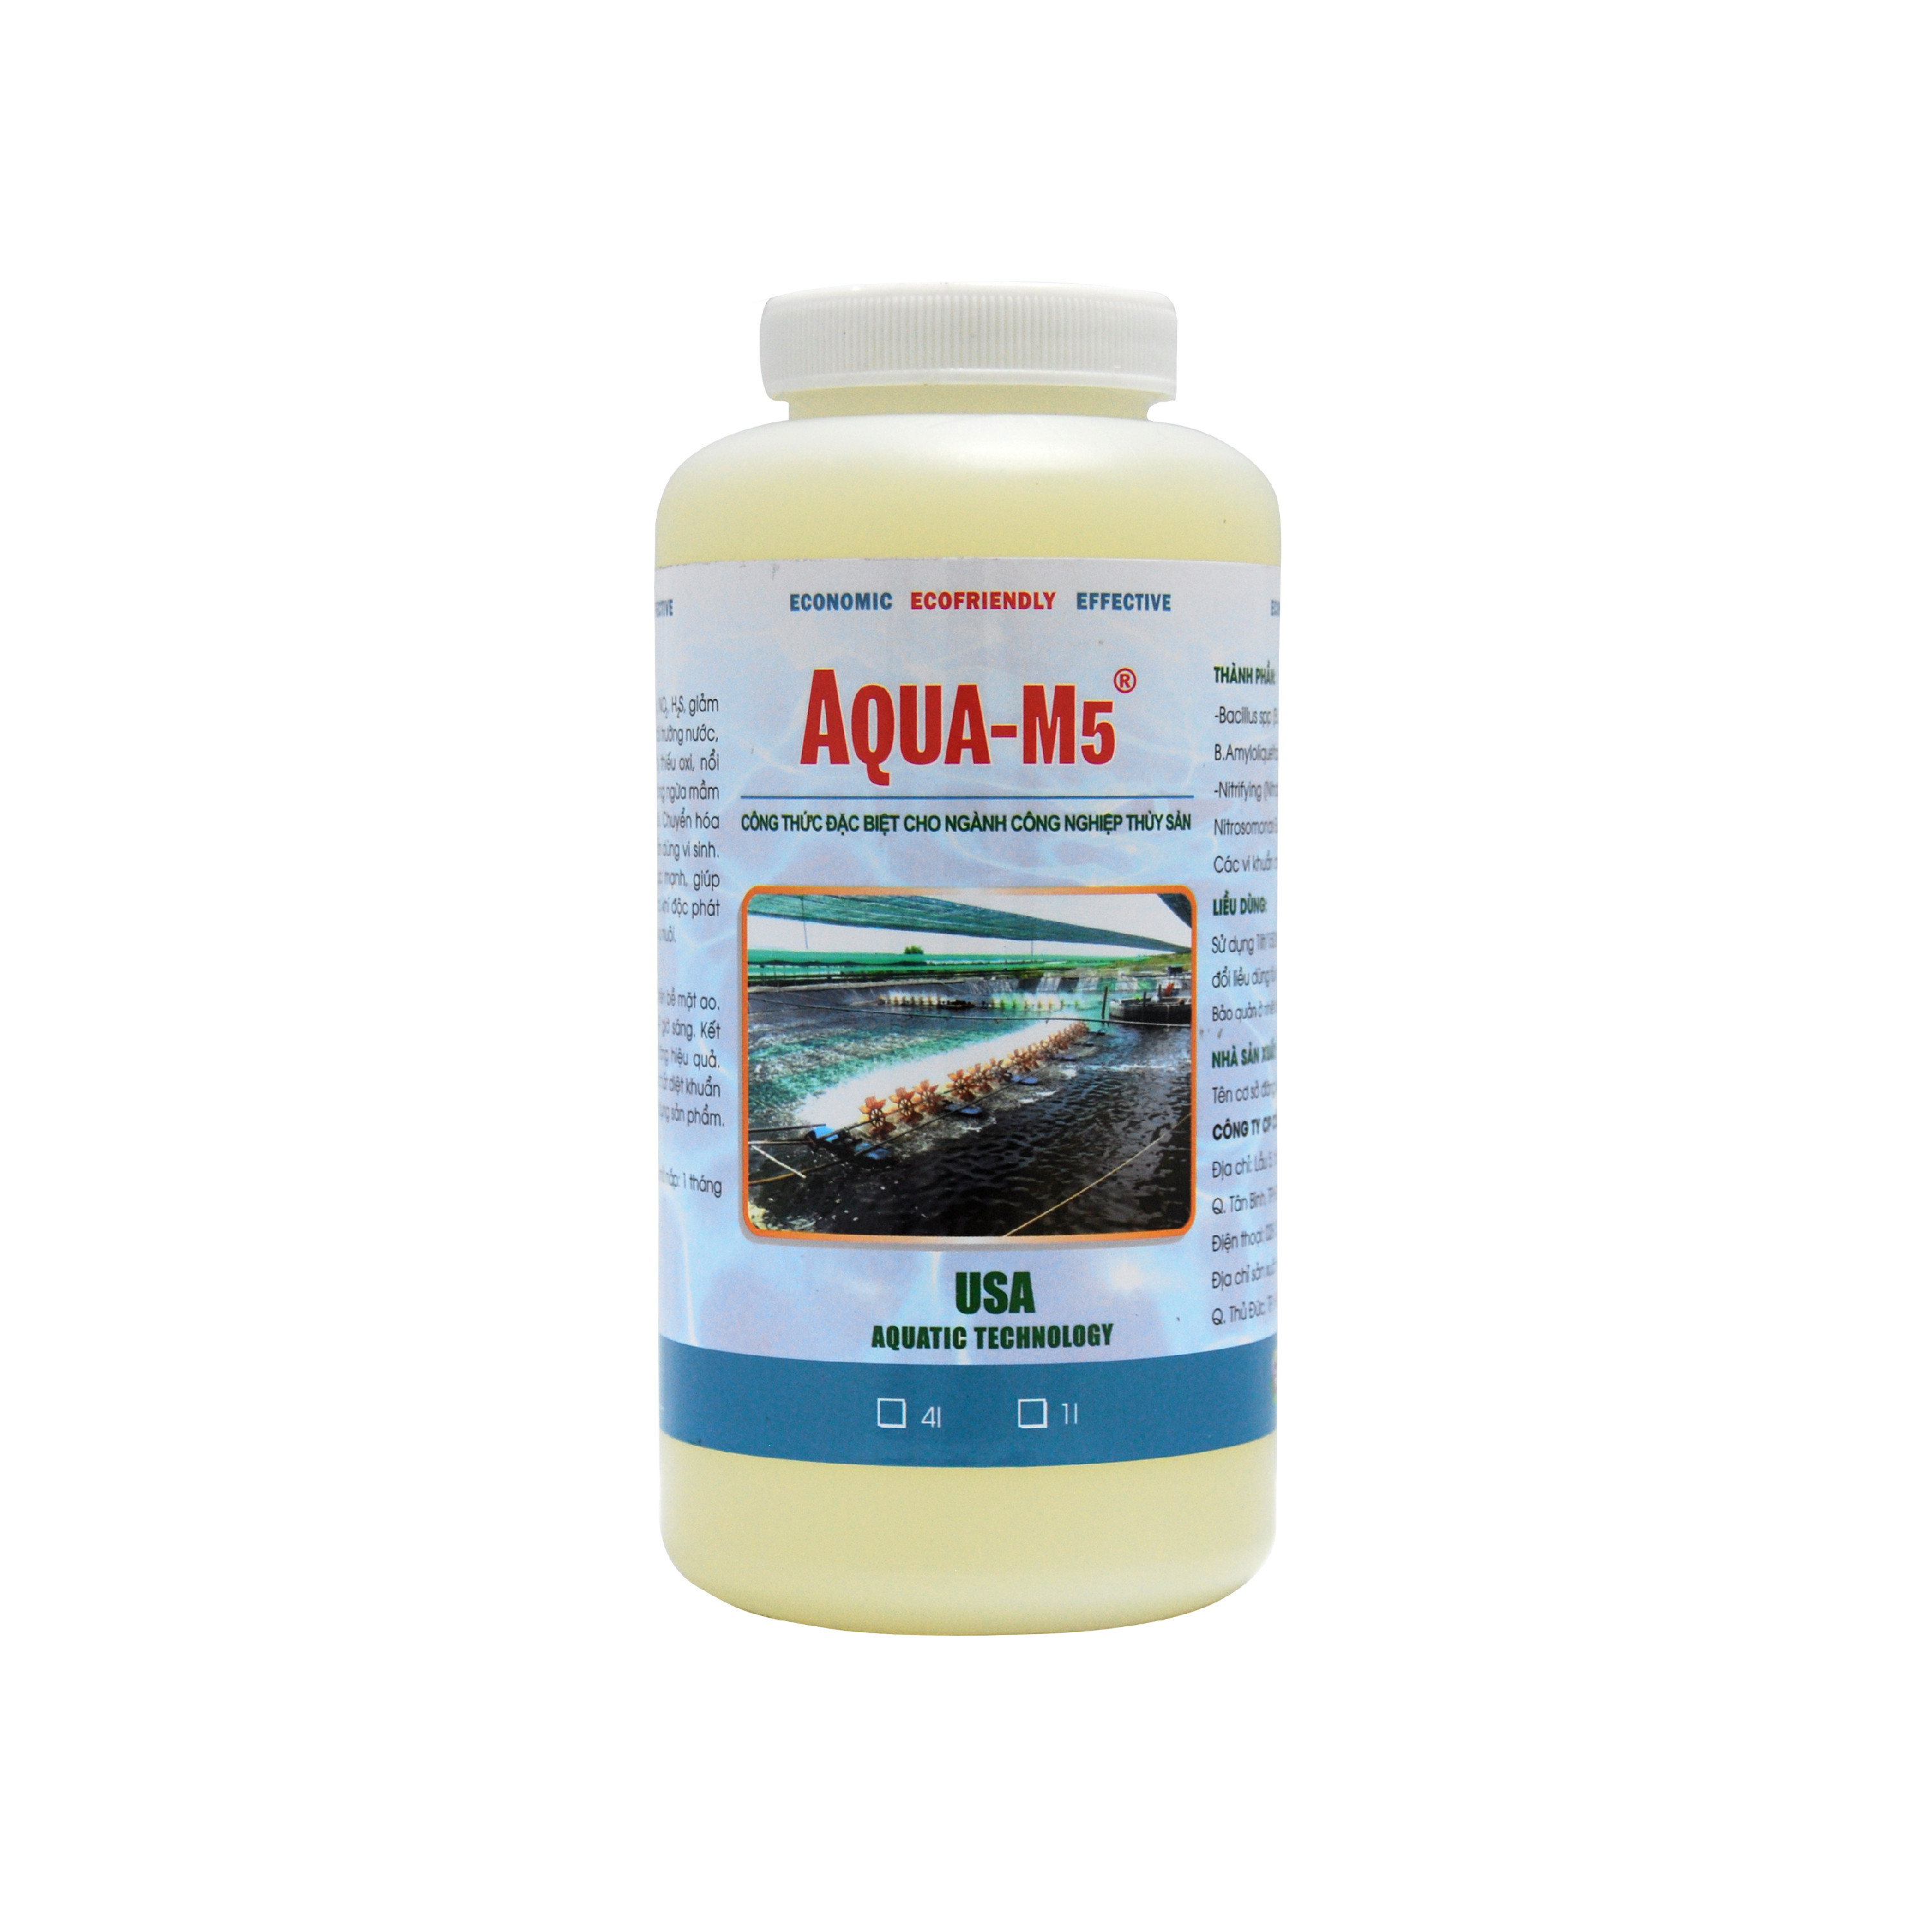 AQUA M5 Vi sinh xử lý khí độc trong ao nuôi thủy sản - Chai 1 lít